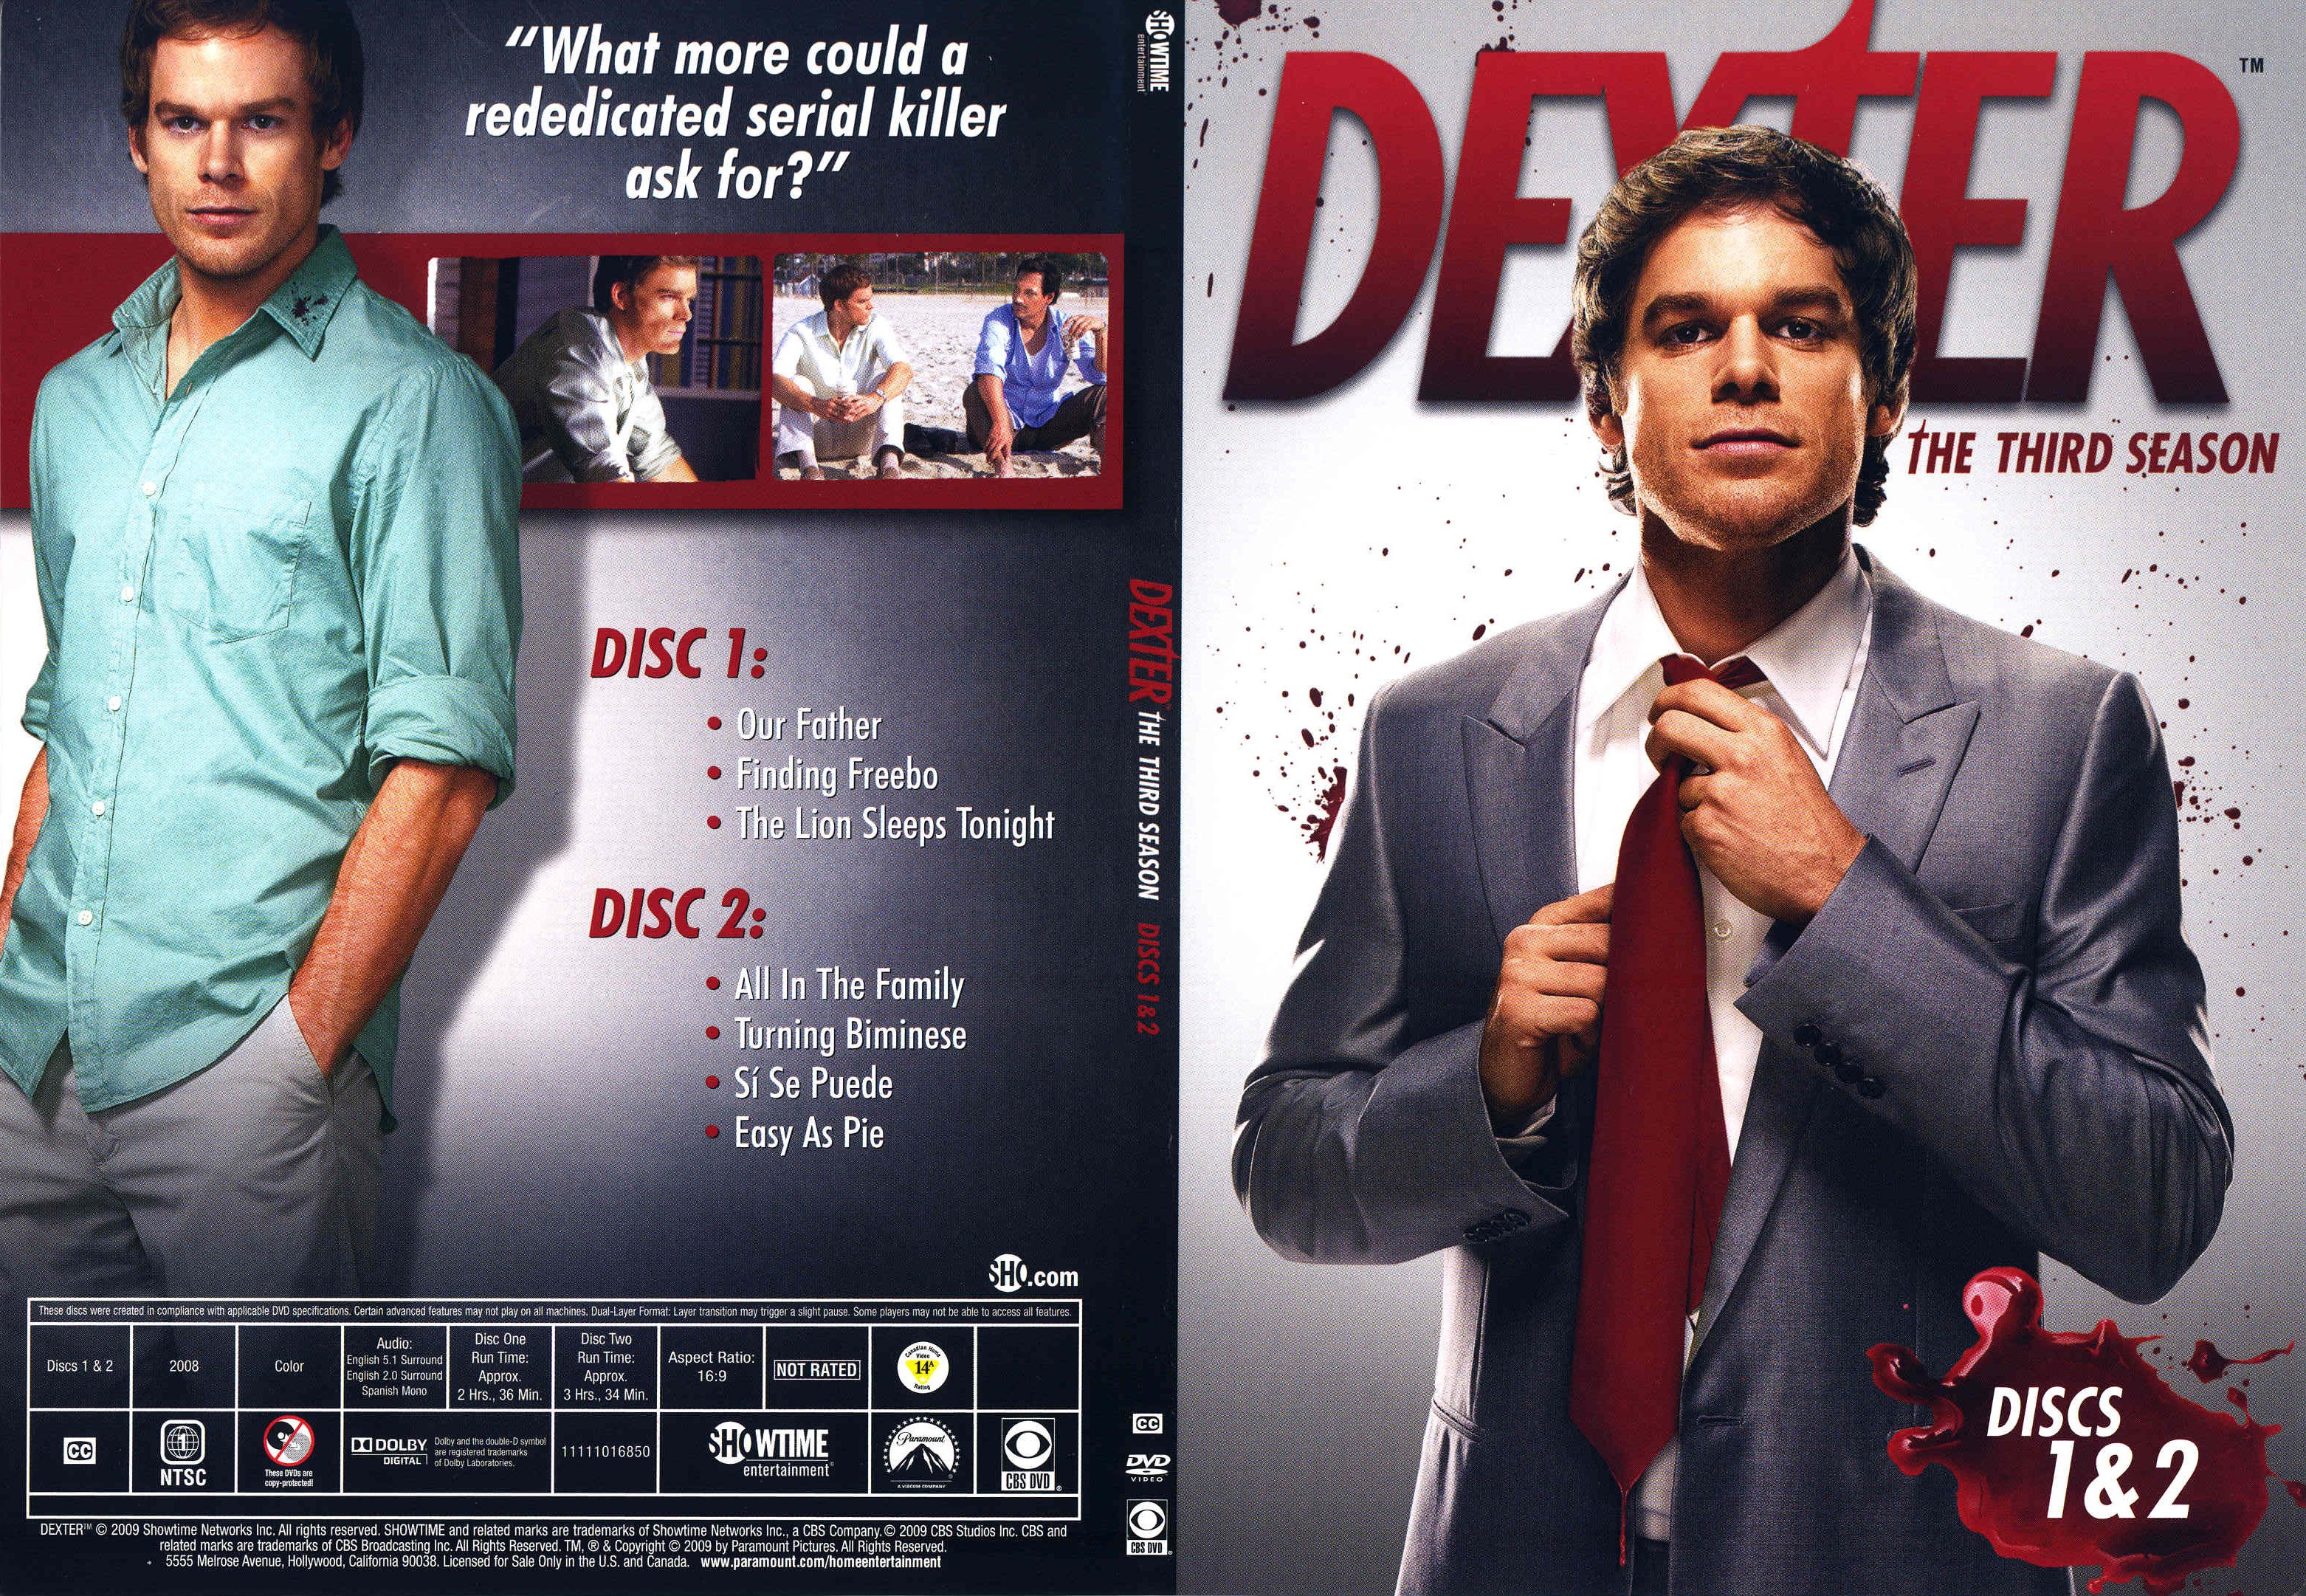 Jaquette DVD Dexter Saison 3 DVD 1 (Canadienne)